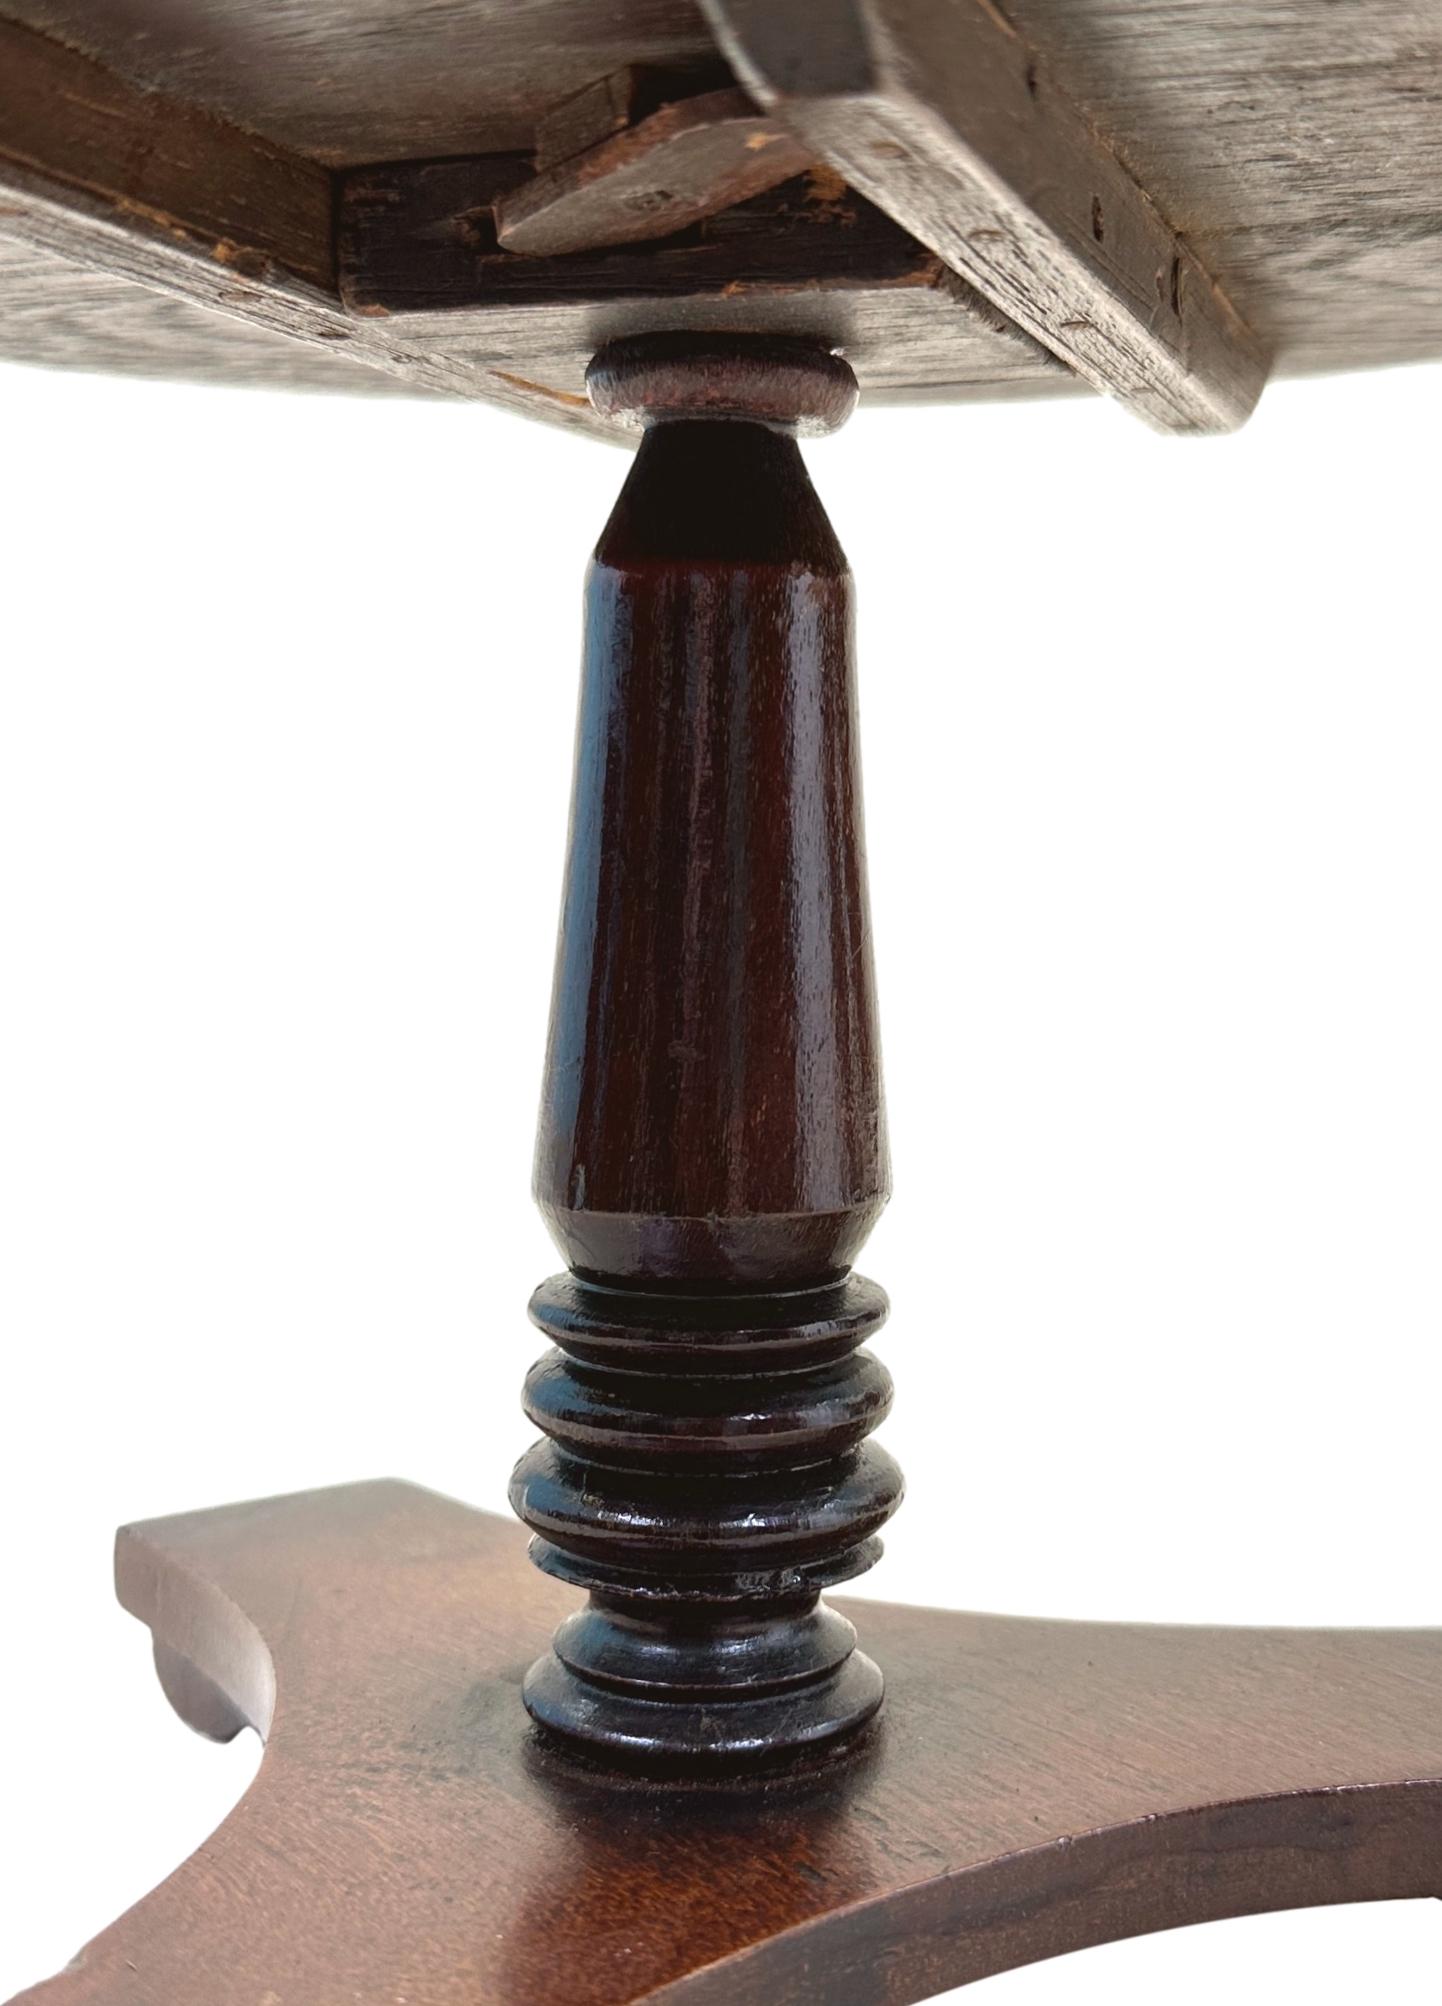 Une attrayante et charmante table centrale miniature en acajou du milieu du 19e siècle, avec un plateau basculant sur un support central tourné et une base triforme avec d'élégants pieds à enroulements.

La finalité initiale de nombreux meubles